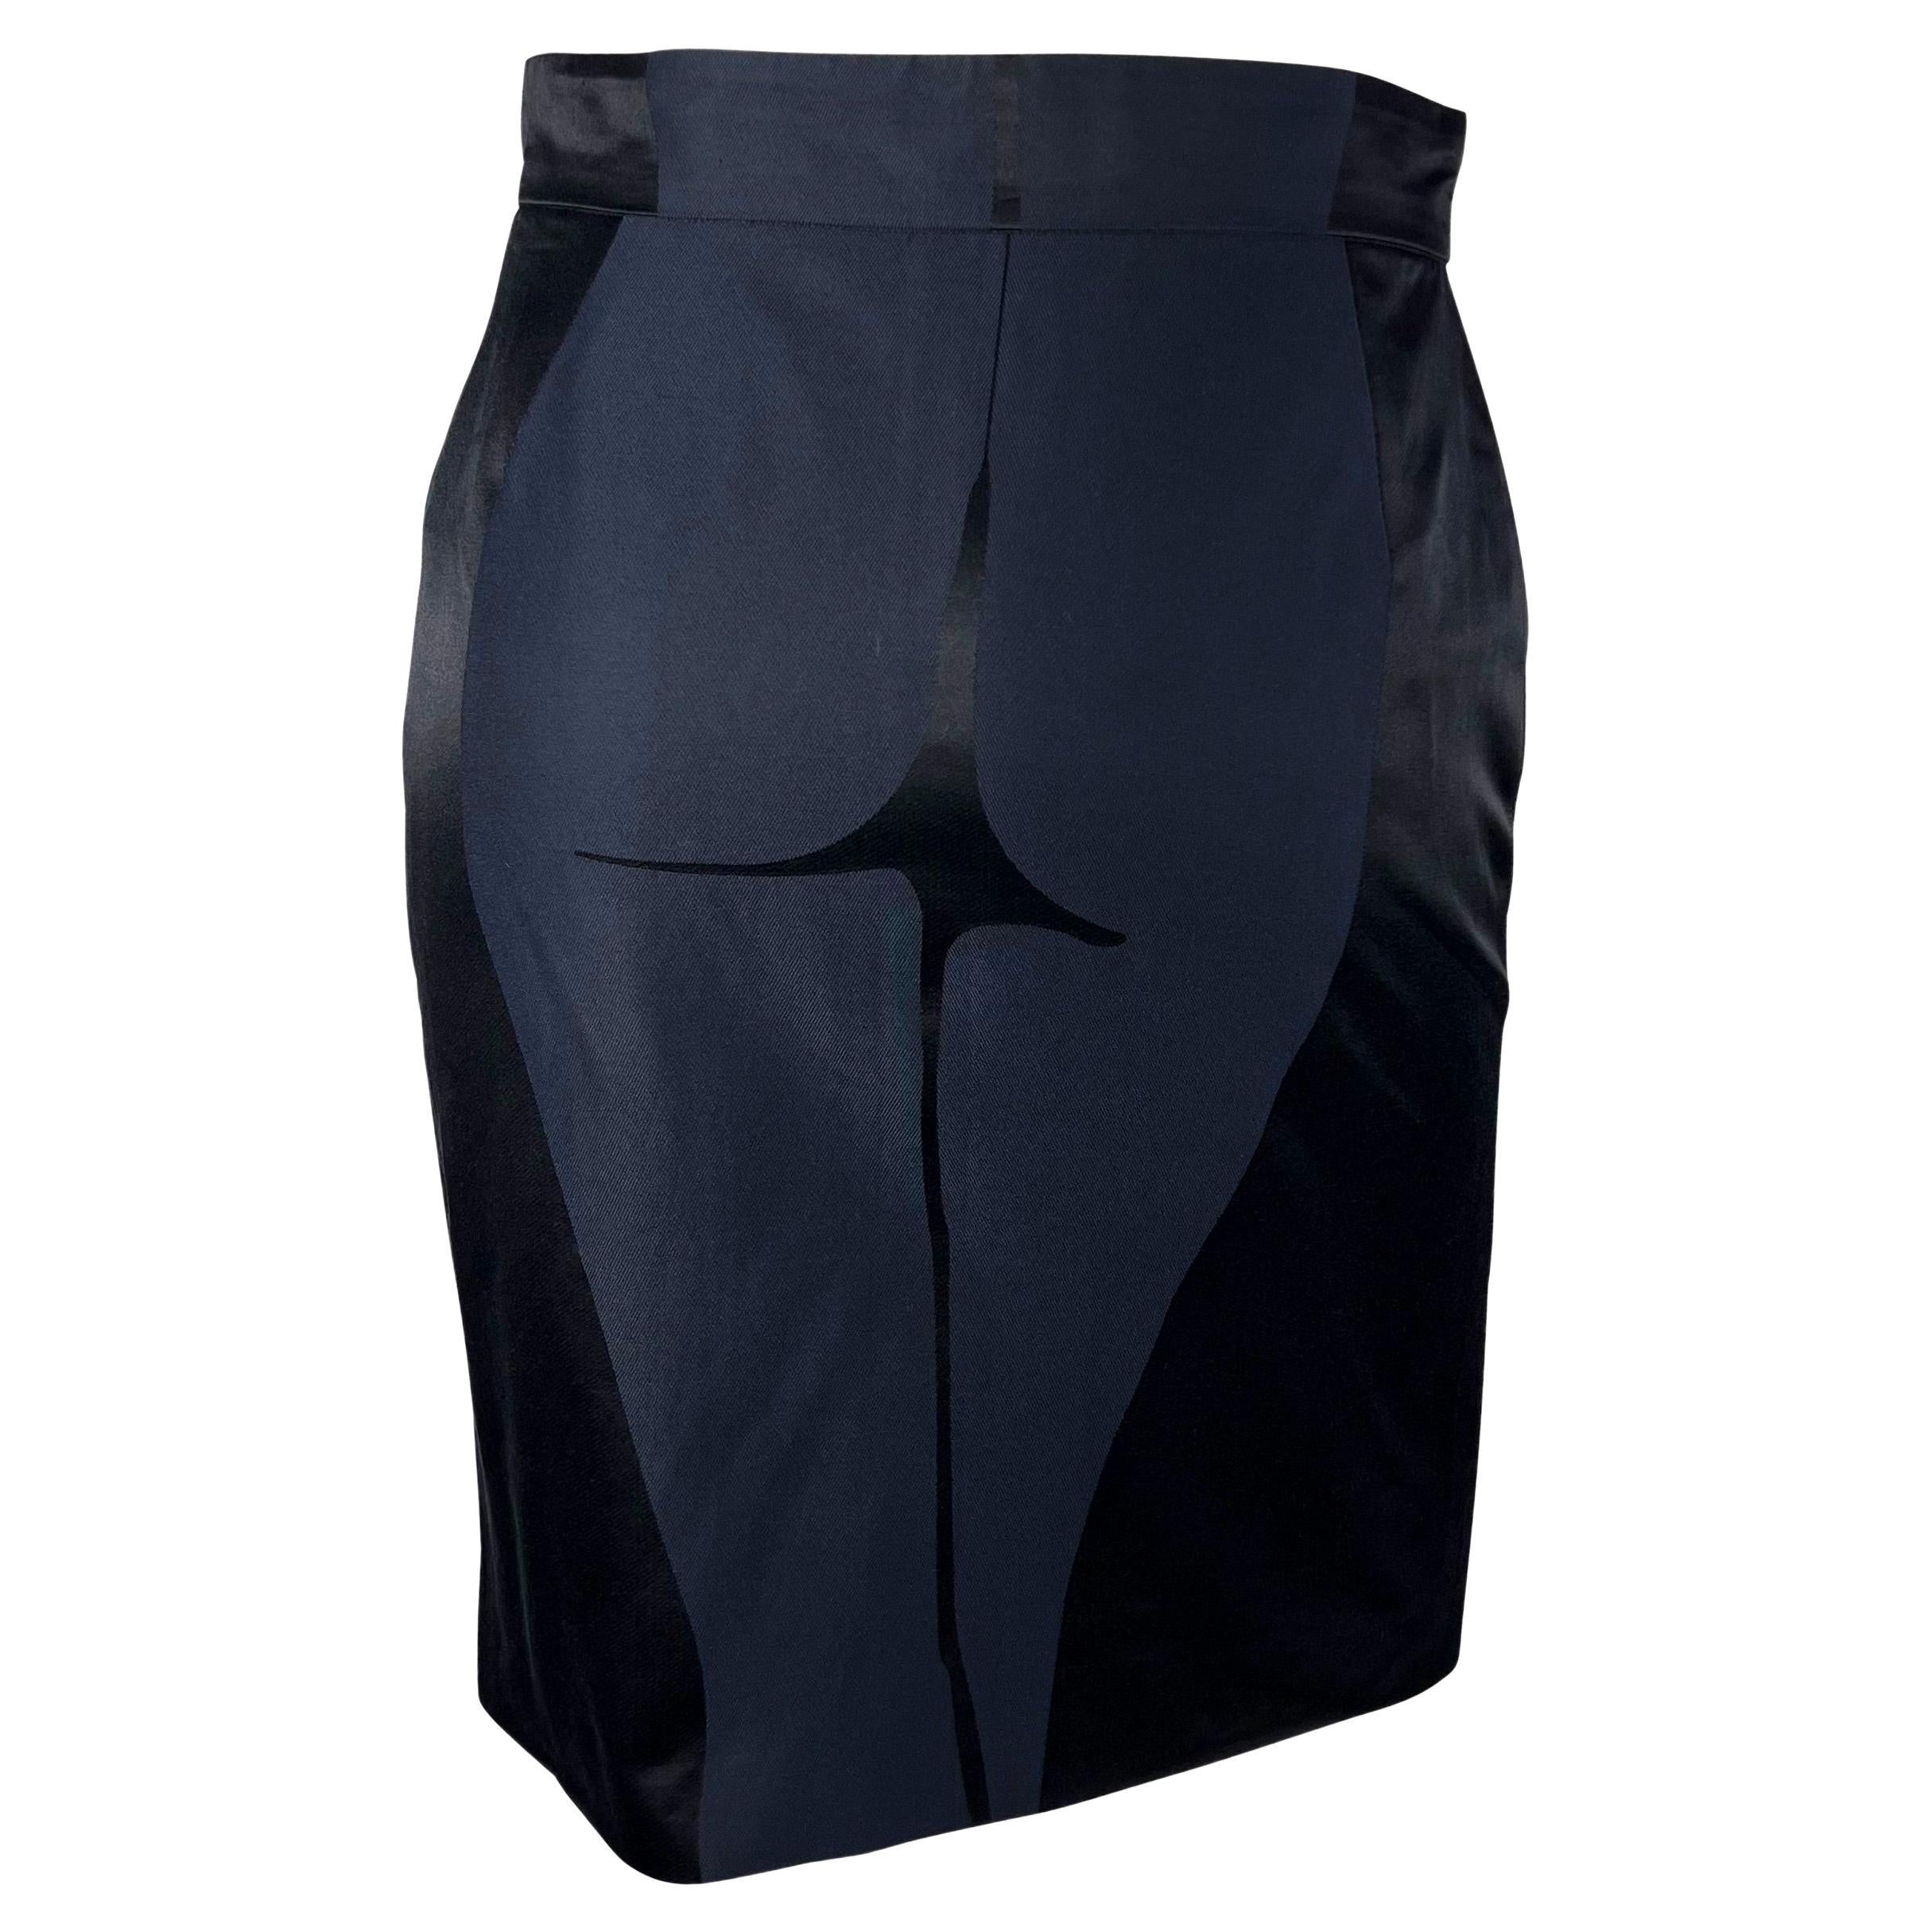 S/S 2003 Yves Saint Laurent by Tom Ford Female Body Print Runway Skirt For Sale